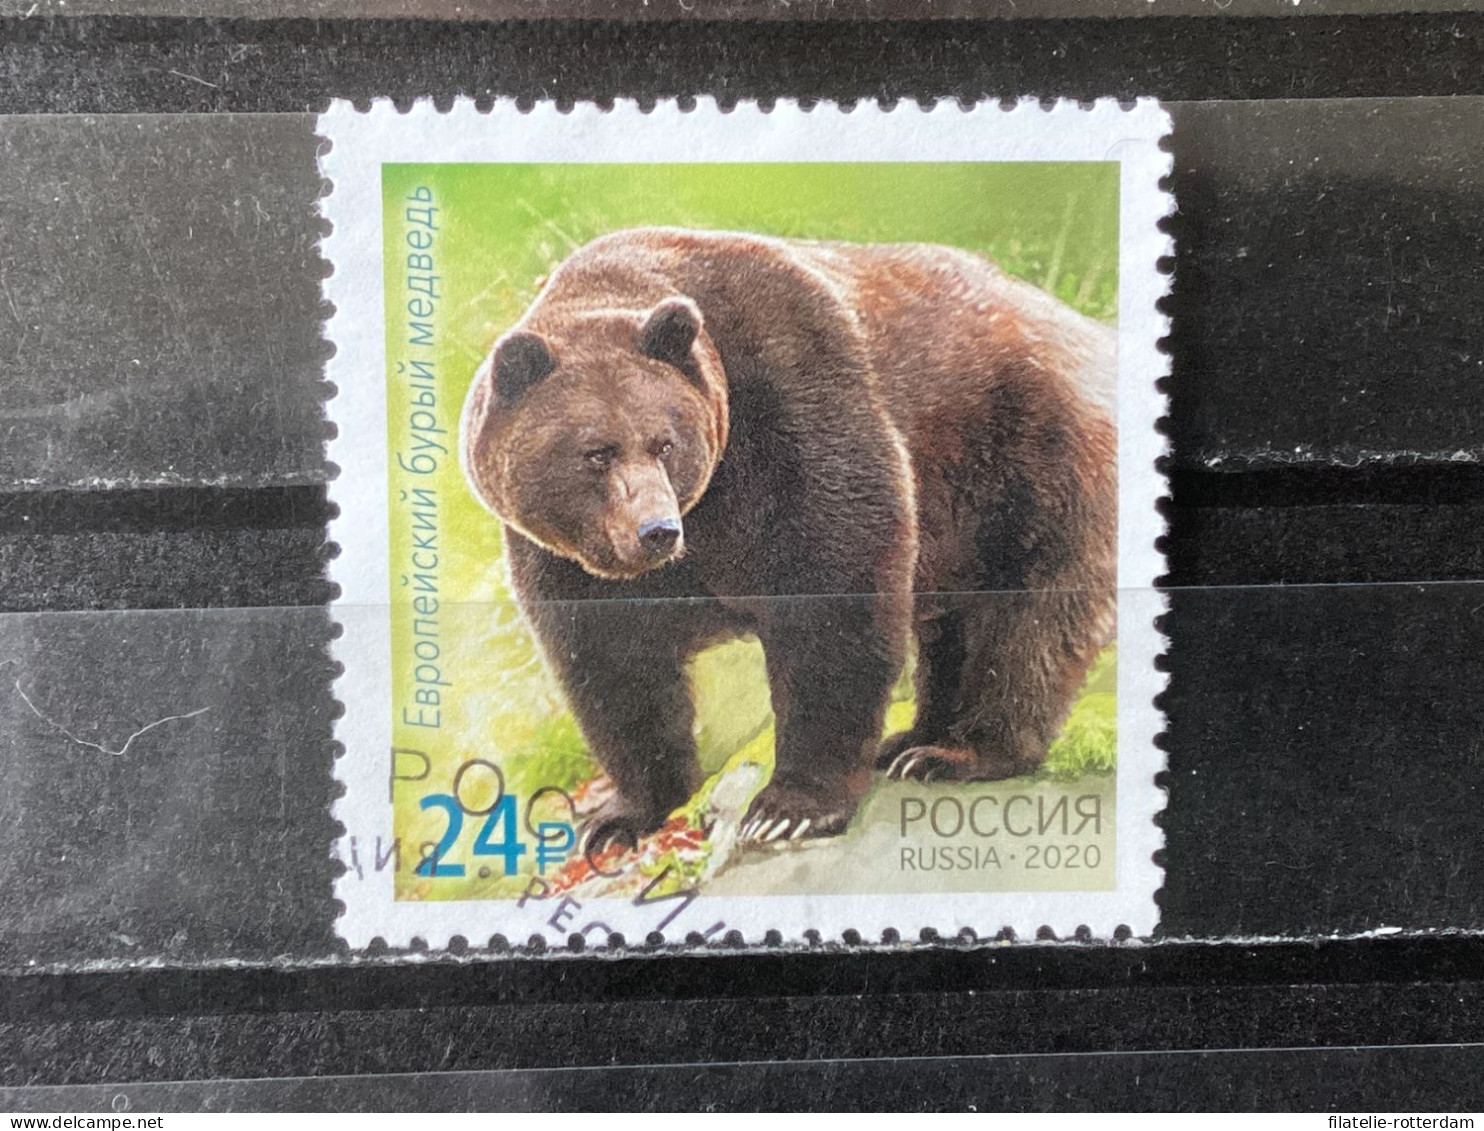 Russia / Rusland - Bears (24) 2020 - Usados